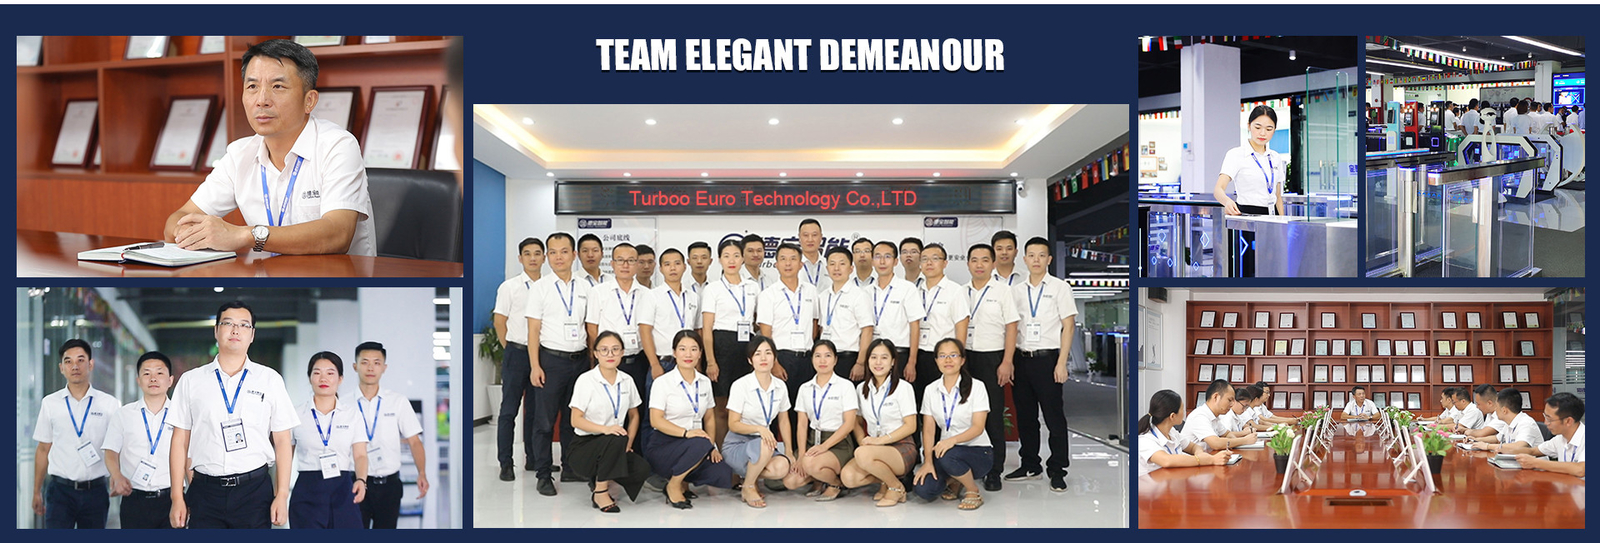 ประเทศจีน Turboo Euro Technology Co., Ltd. รายละเอียด บริษัท